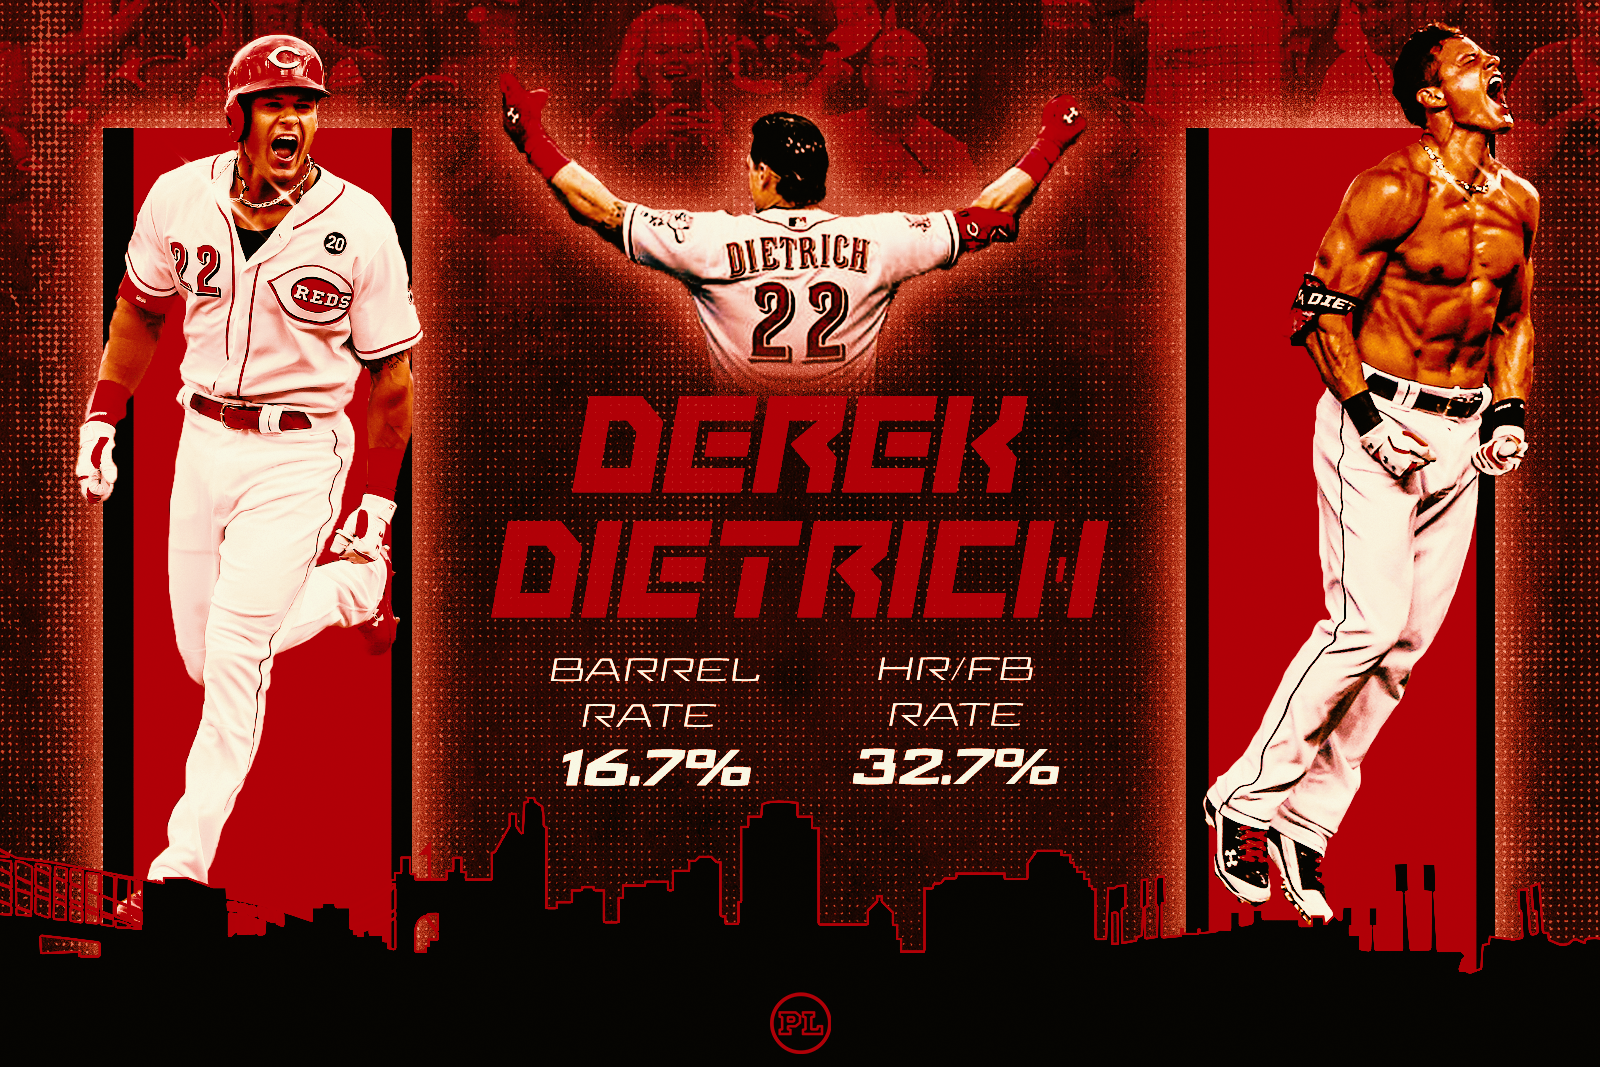 Cincinnati Reds: Derek Dietrich doesn't mind getting hit by pitch